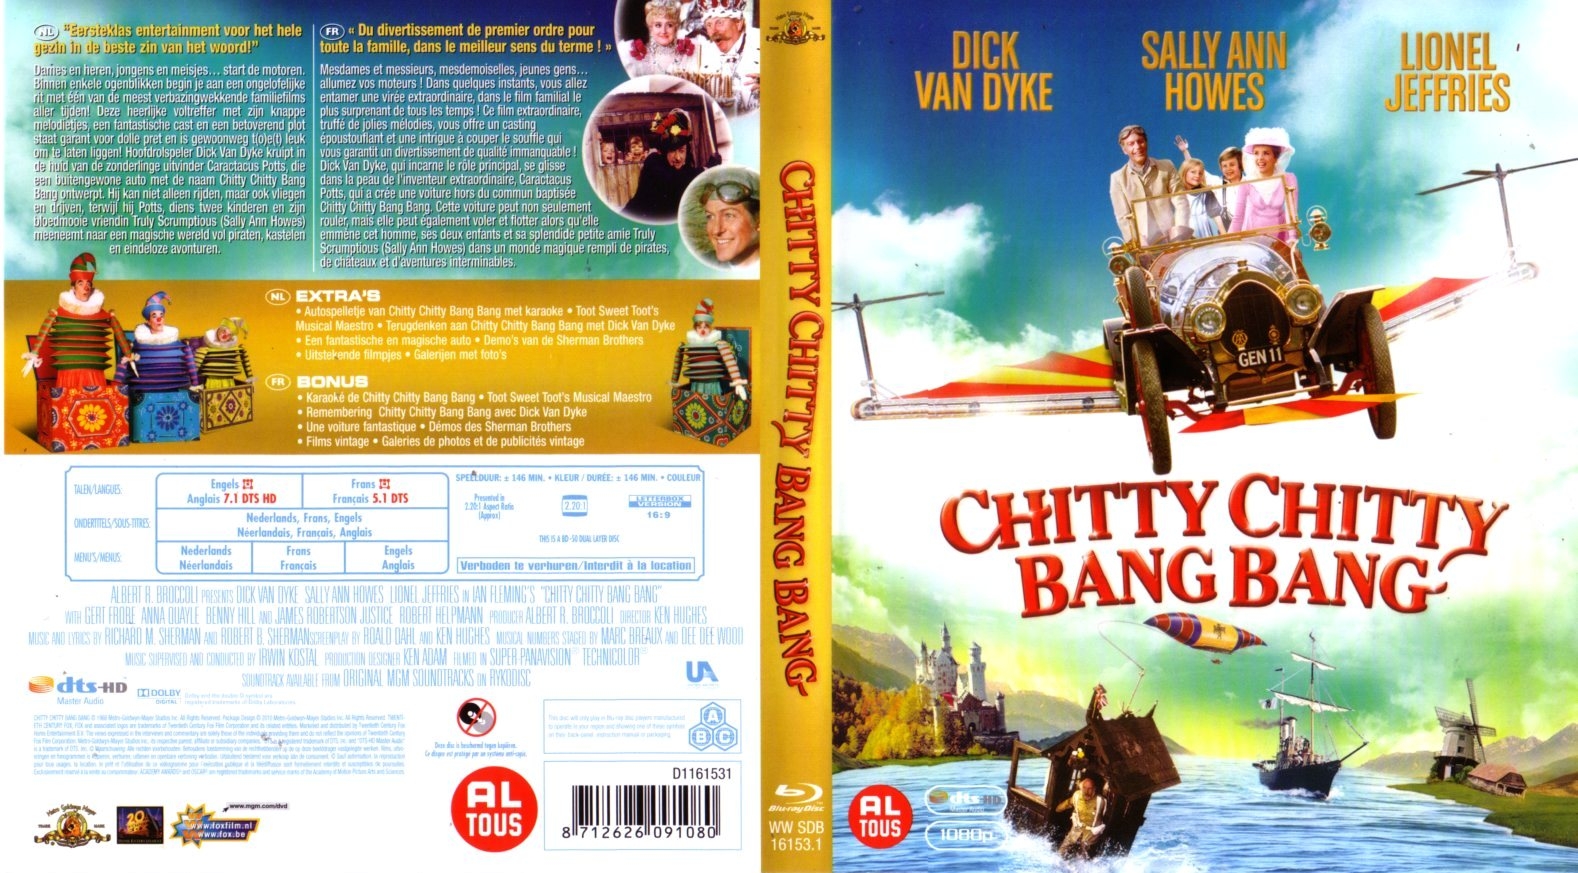 Jaquette DVD Chitty chitty bang bang (BLU-RAY)